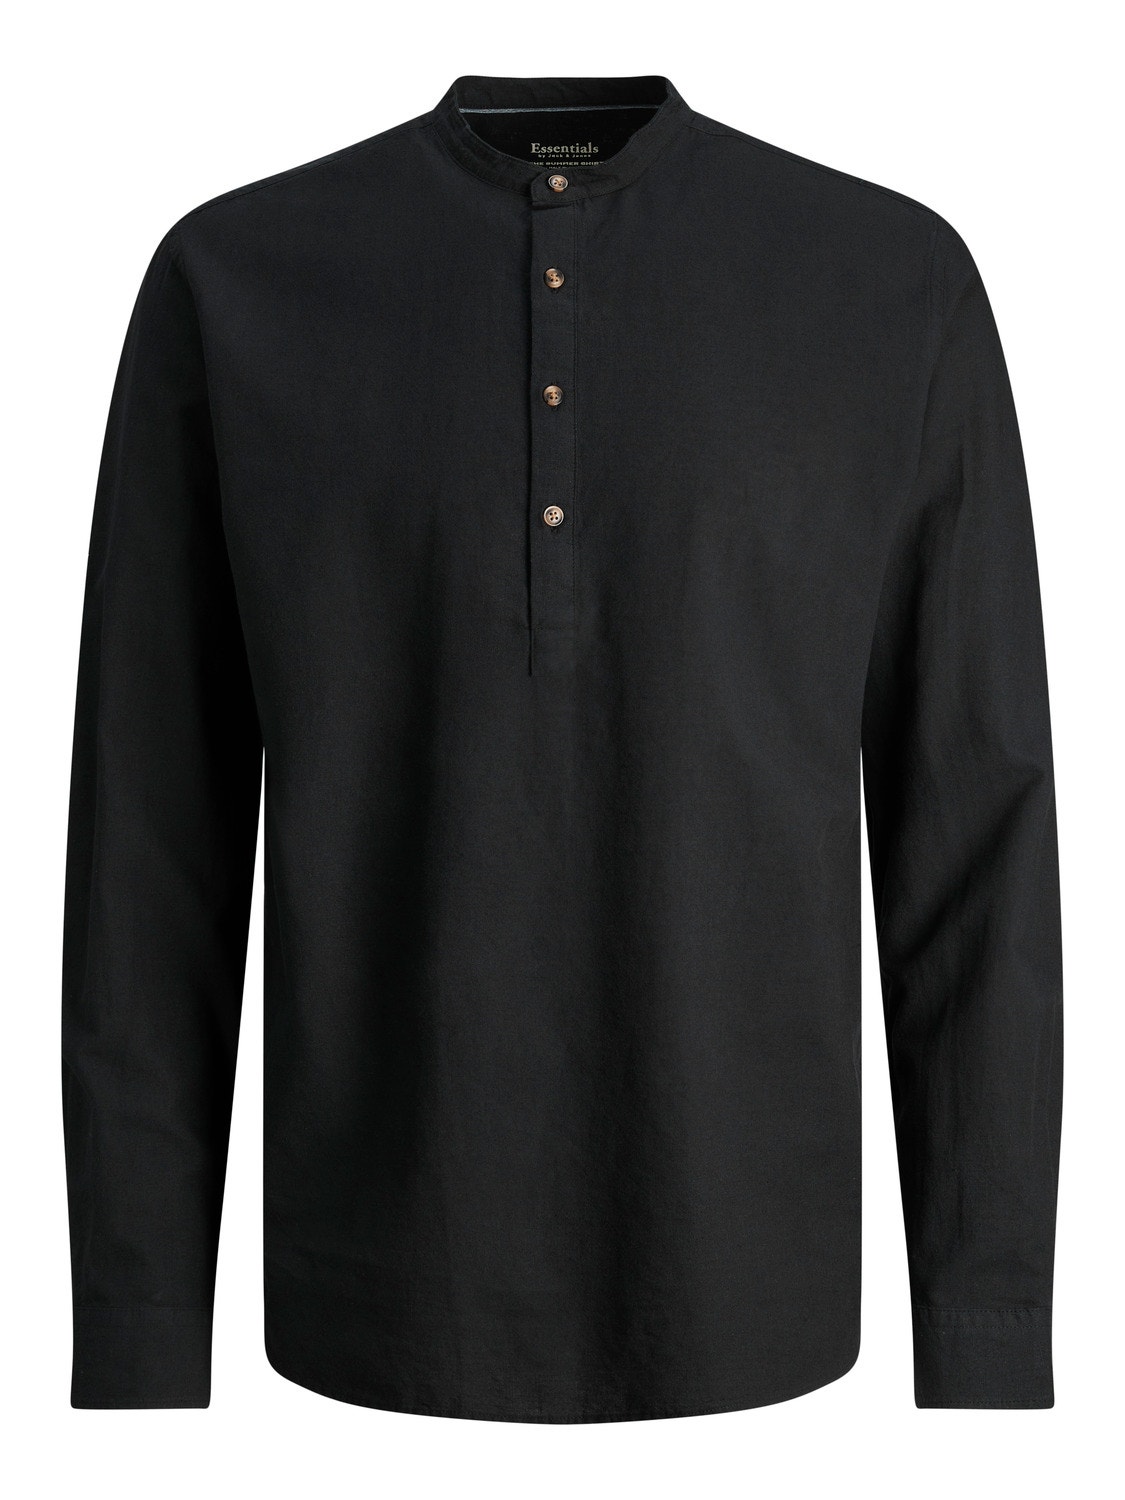 Jack & Jones Comfort Fit Marškiniai -Black - 12248410